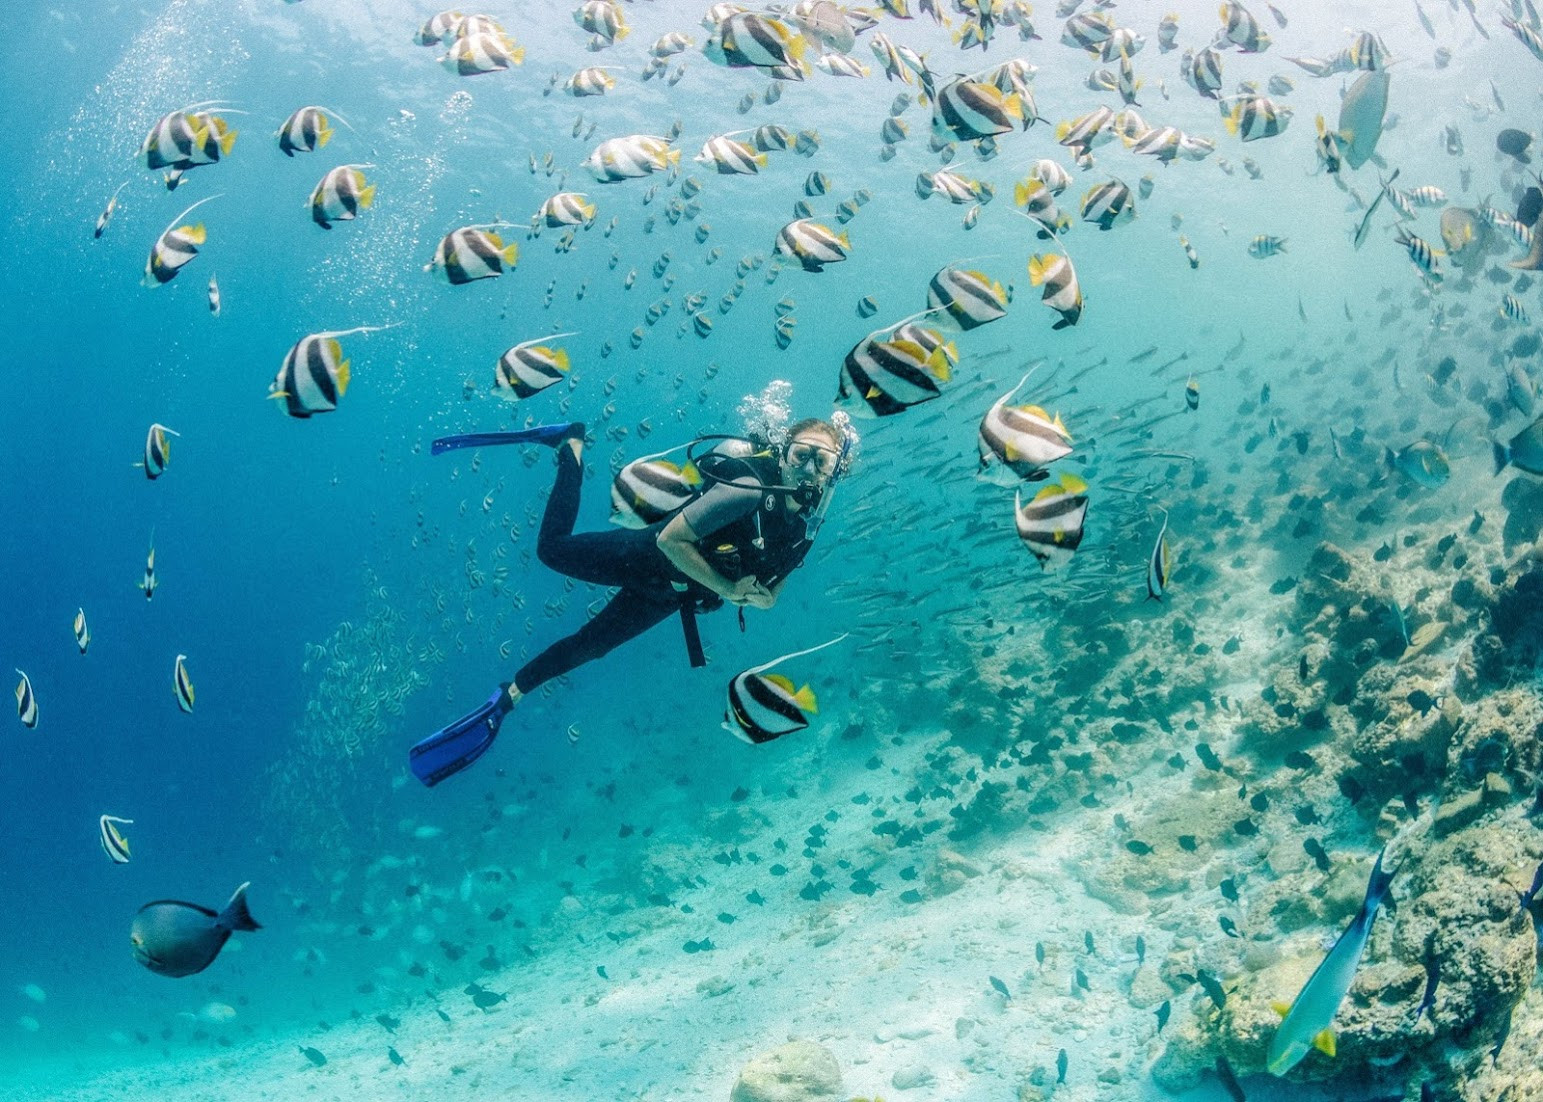 Gili Lankanfushi’s Marine Giveaway to Mother Nature